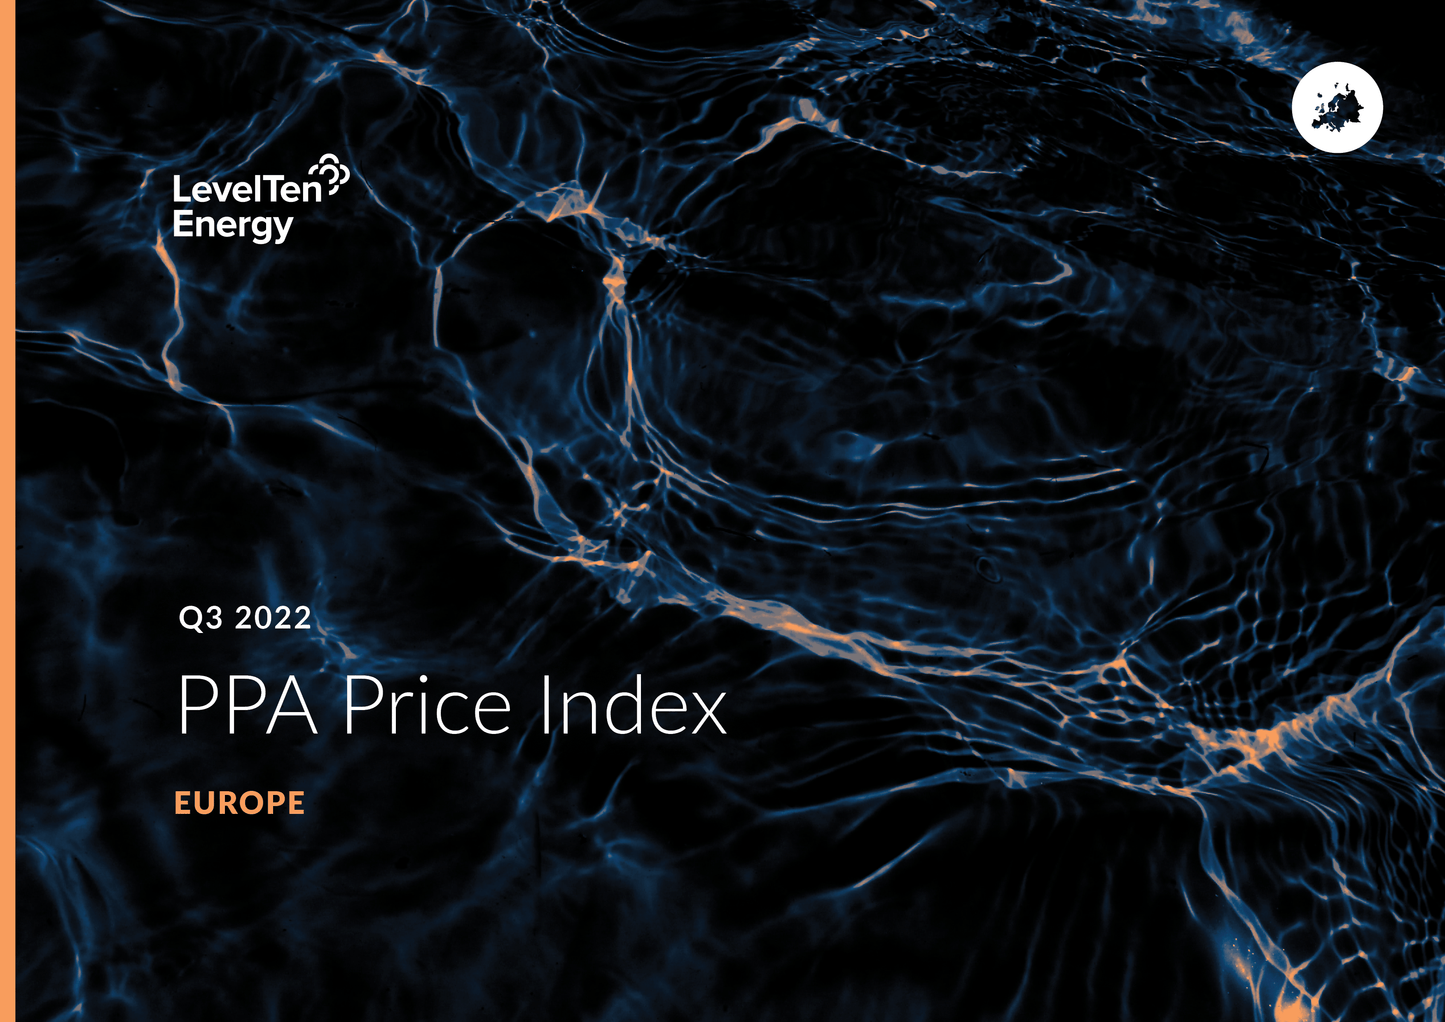 Q3 2022 PPA Price Index - Europe